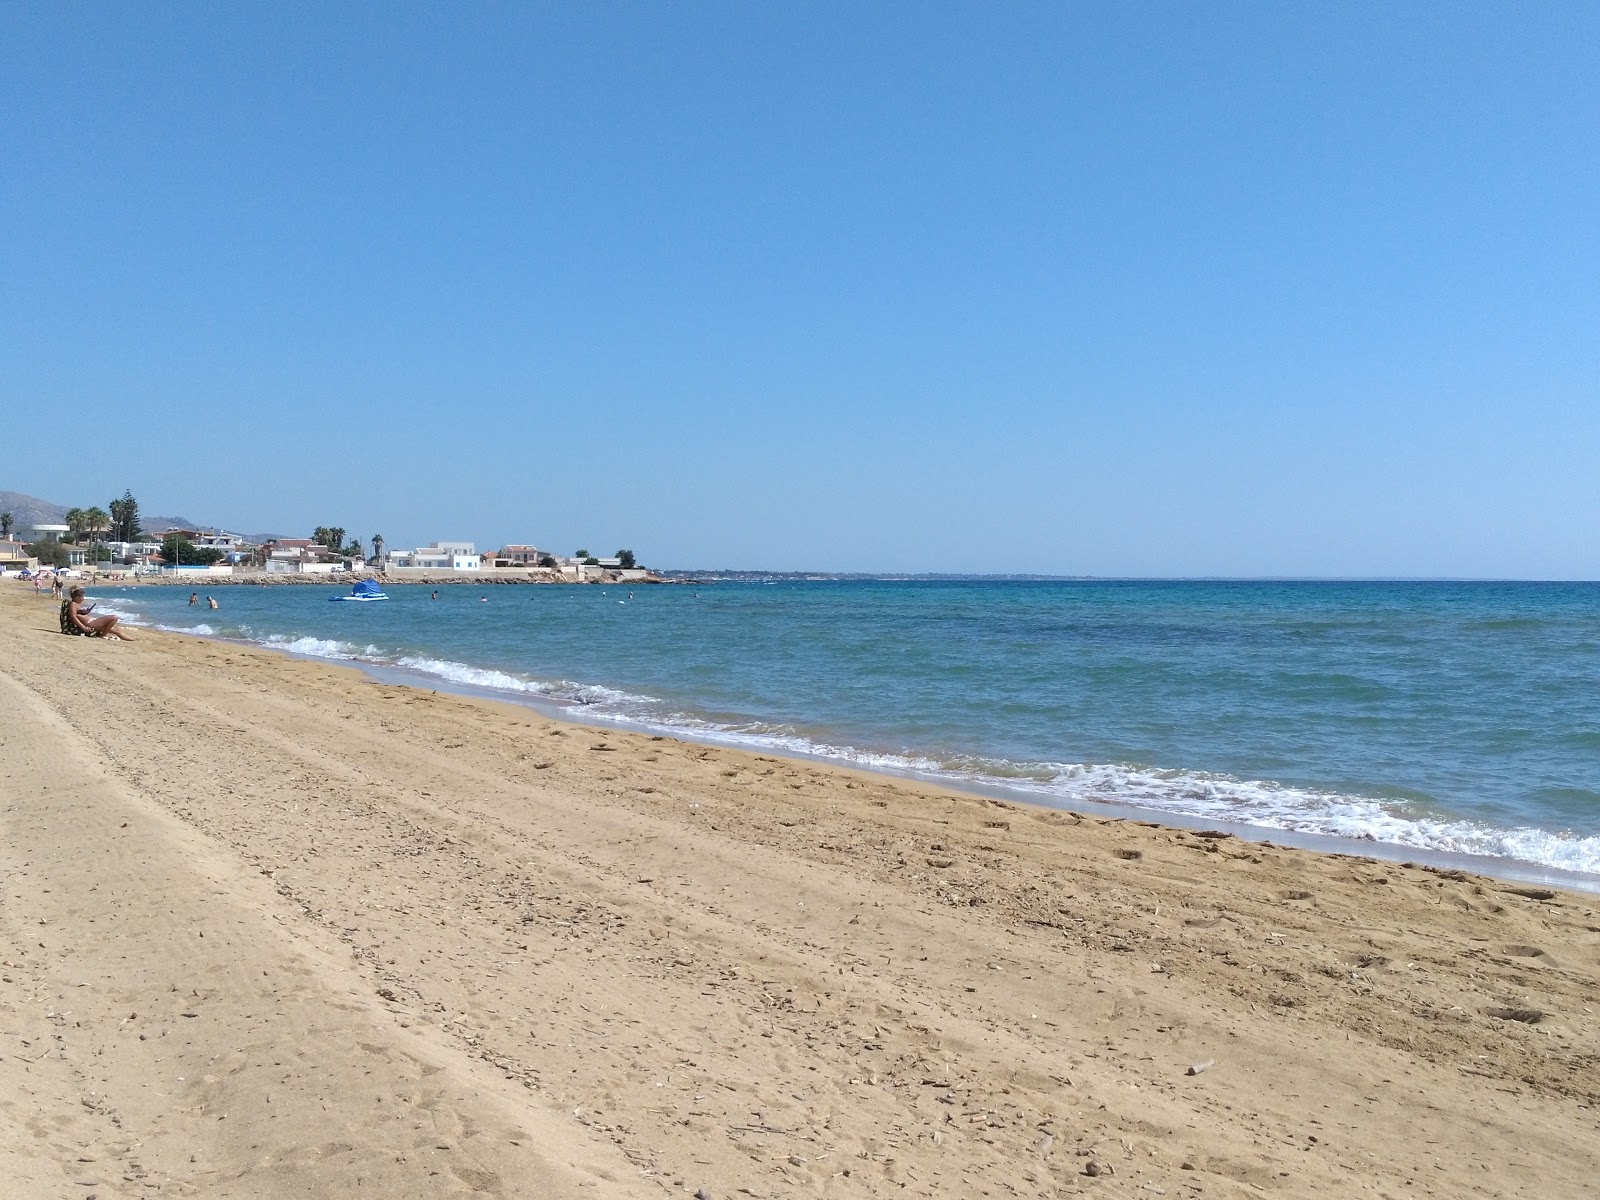 Spiaggia Calabernardo'in fotoğrafı geniş ile birlikte